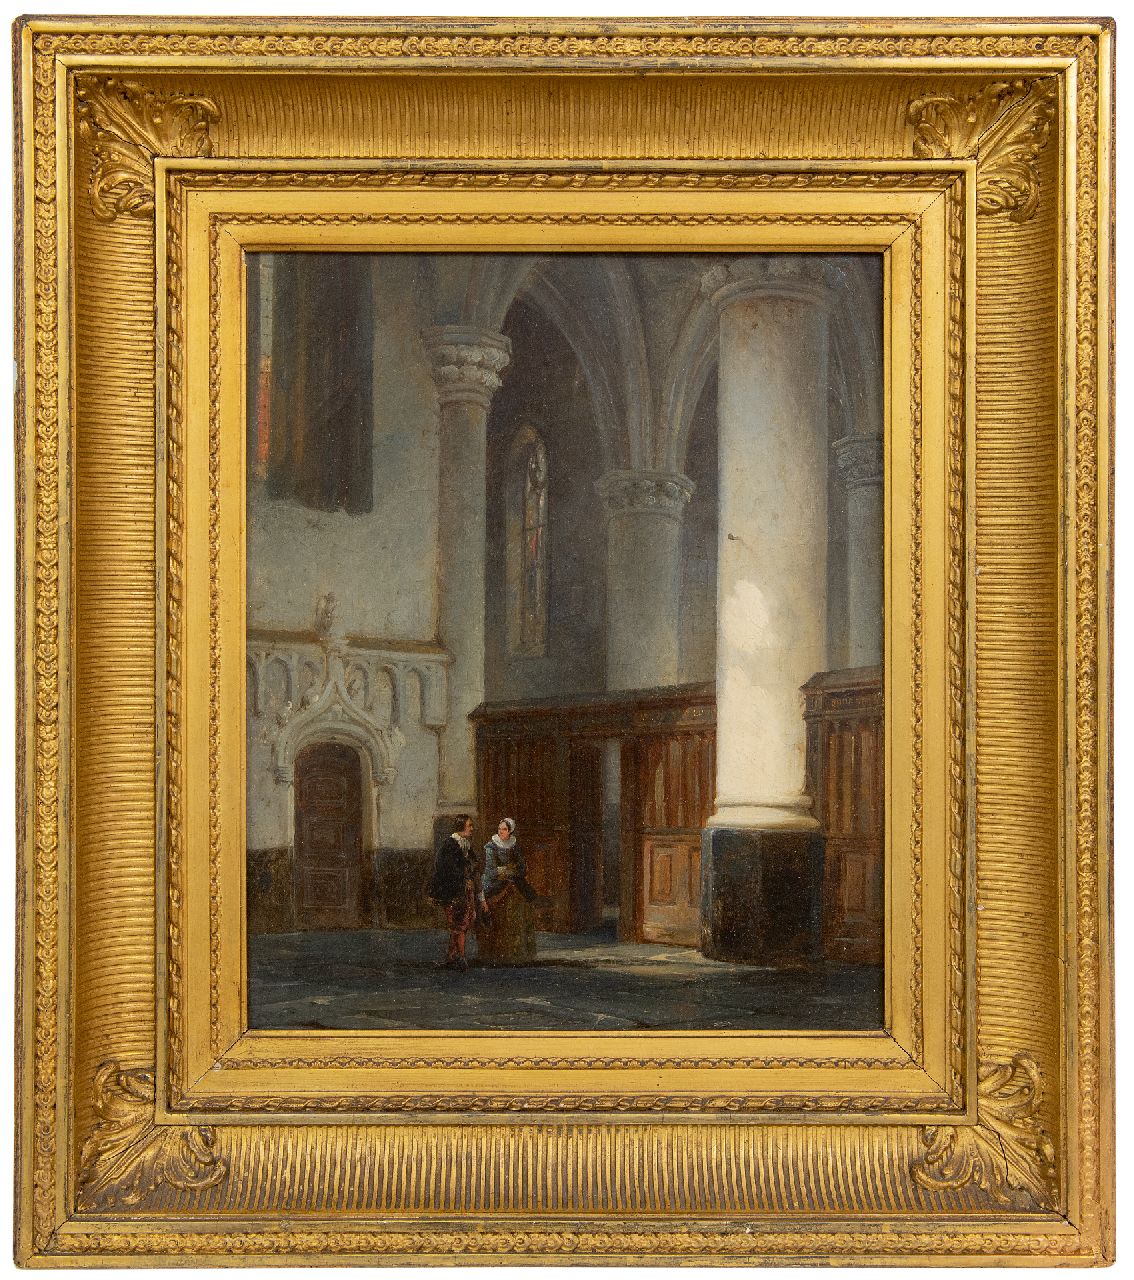 Springer C.  | Cornelis Springer | Schilderijen te koop aangeboden | Man en vrouw in een kerkinterieur, olieverf op doek 32,9 x 27,3 cm, gesigneerd linksonder met monogram en gedateerd '44